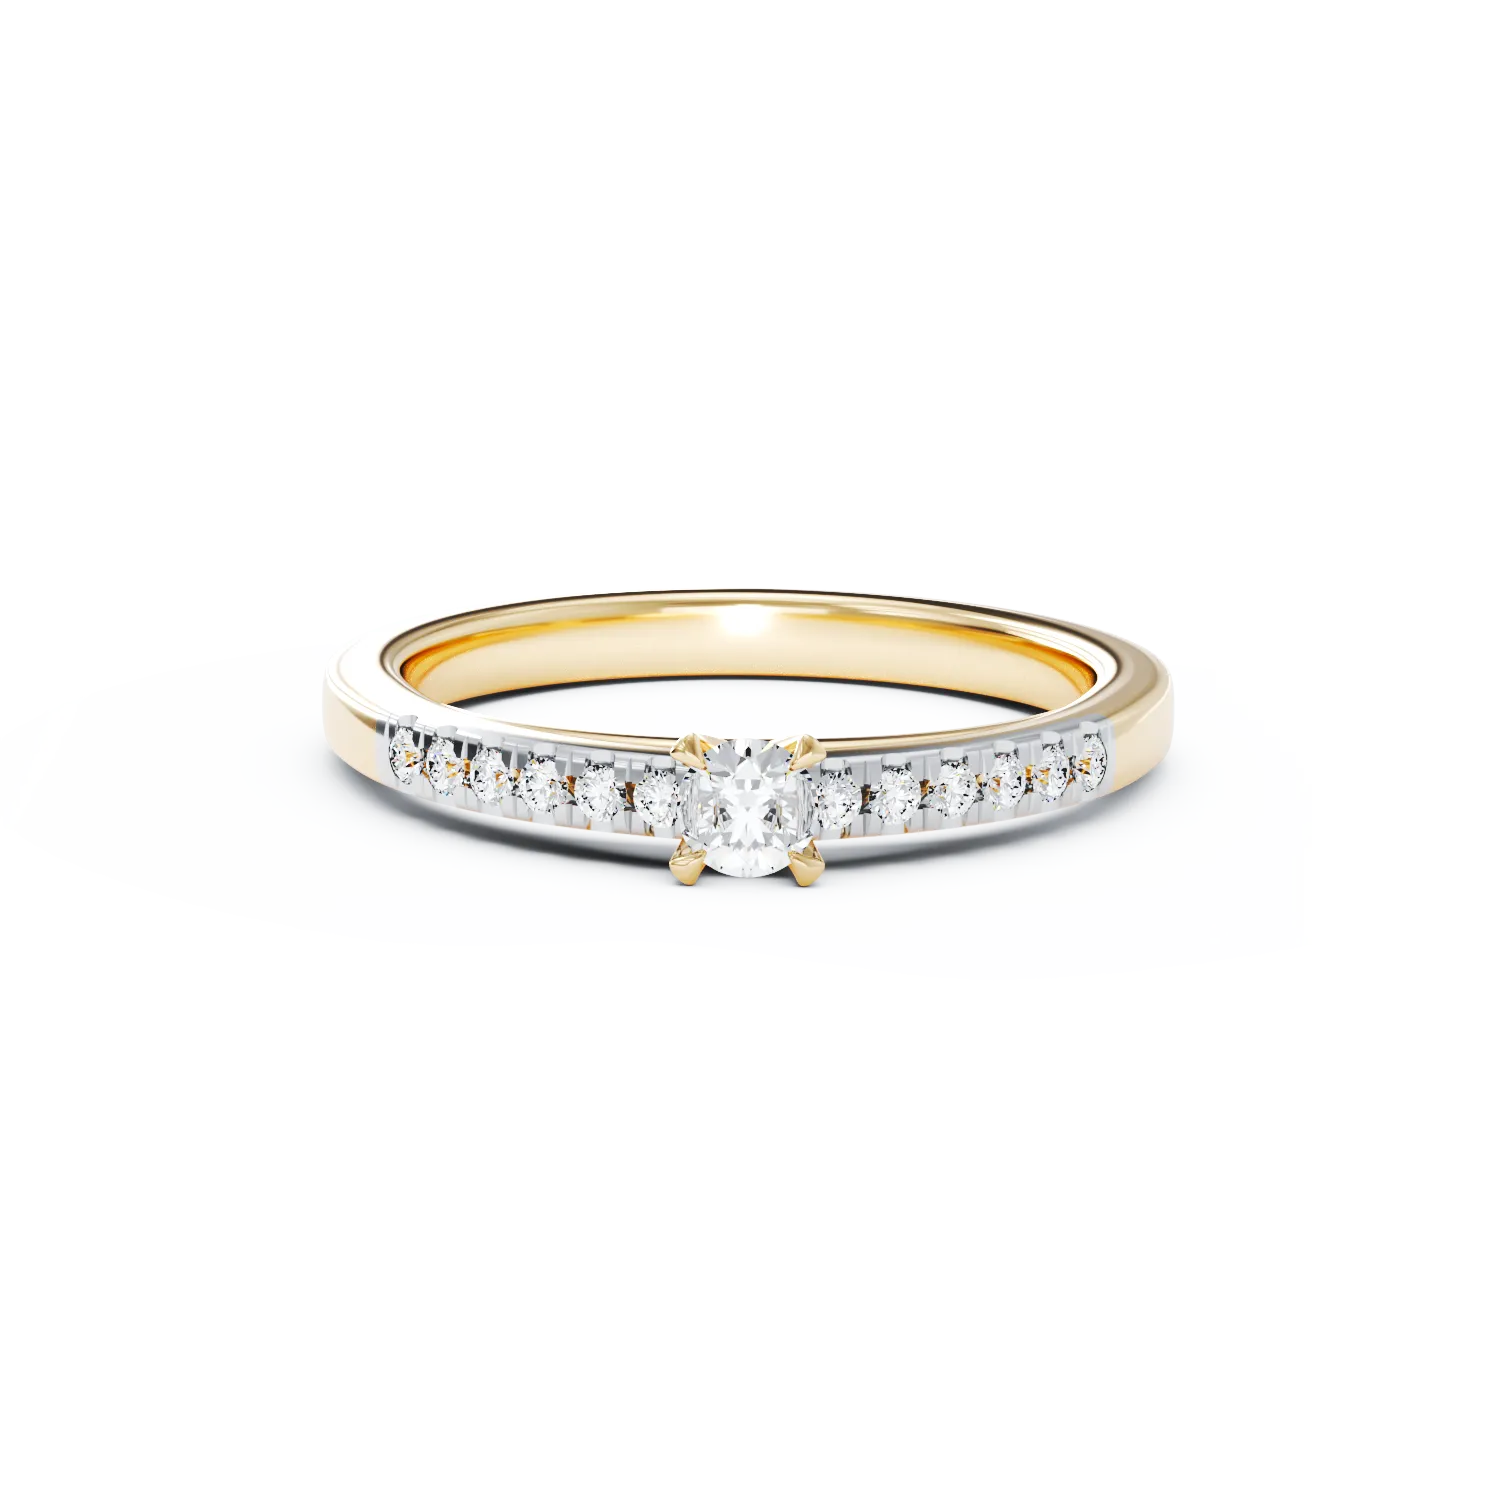 Eljegyzési gyűrű 18K-os sárga aranyból 0,24ct gyémánttal és 0,13ct gyémánttal. Gramm: 2,8